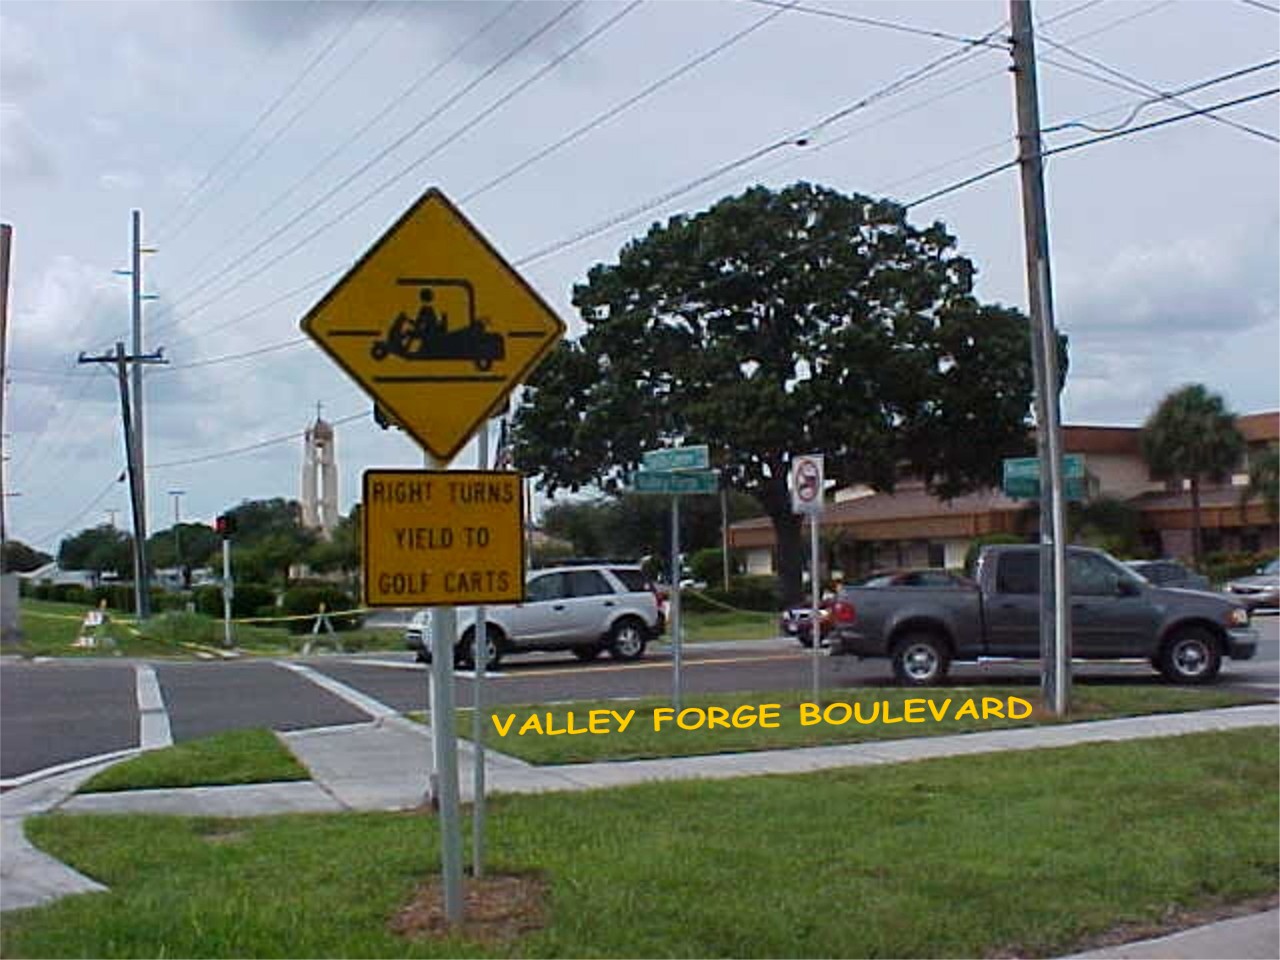 valleyforgeboulevard.jpg